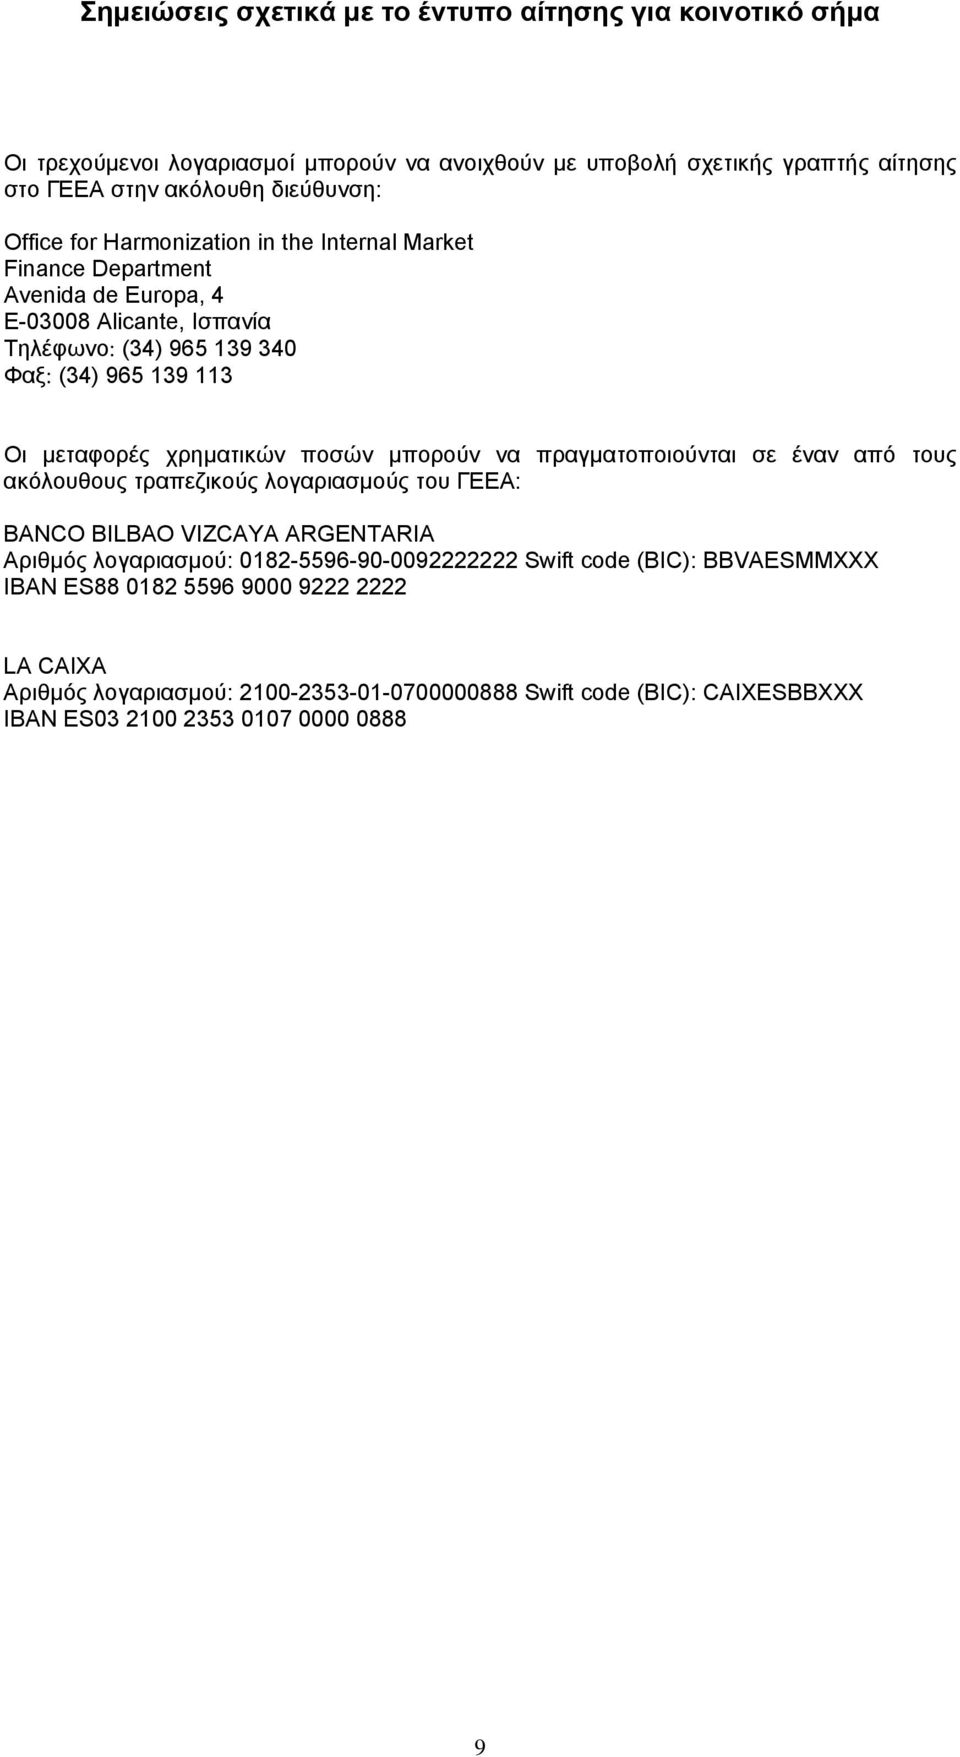 πραγματοποιούνται σε έναν από τους ακόλουθους τραπεζικούς λογαριασμούς του ΓΕΕΑ: BANCO BILBAO VIZCAYA ARGENTARIA Αριθμός λογαριασμού: 0182-5596-90-0092222222 Swift